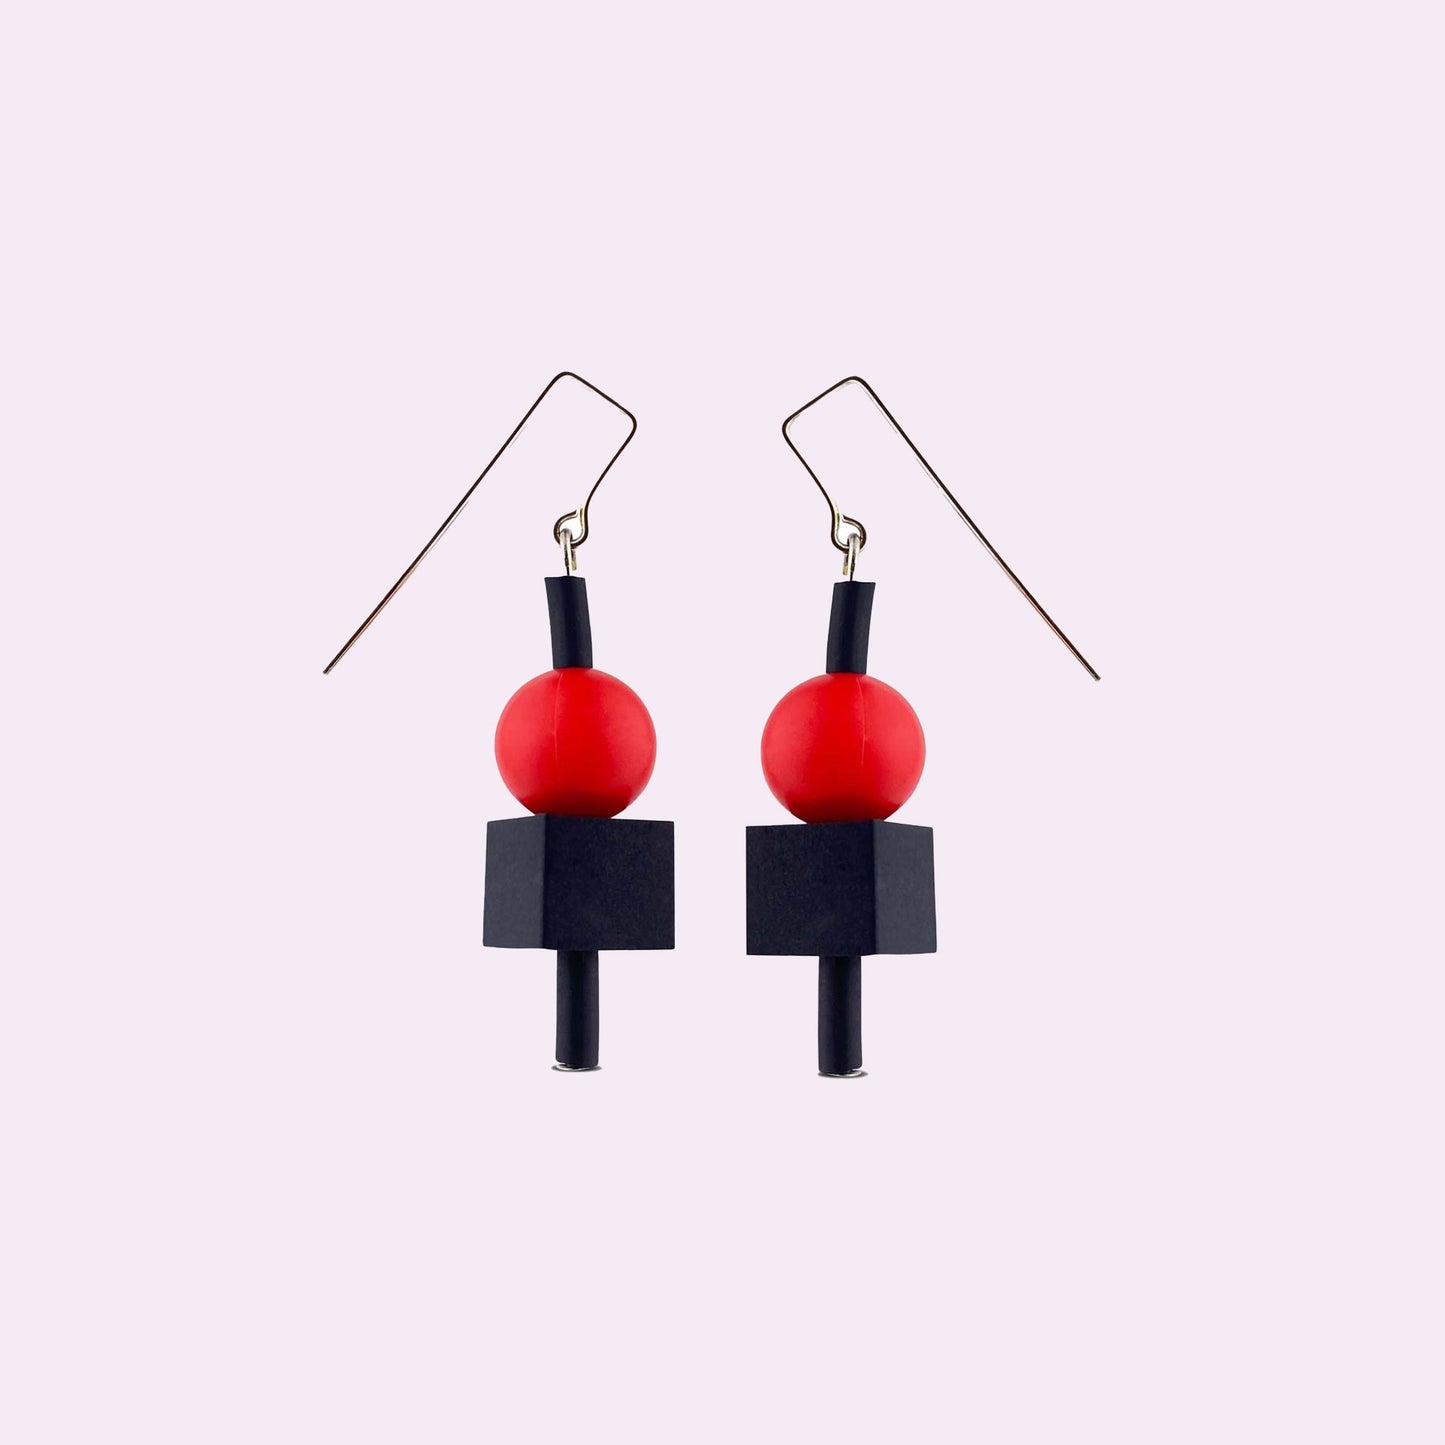 Jello earrings by Frank Ideas